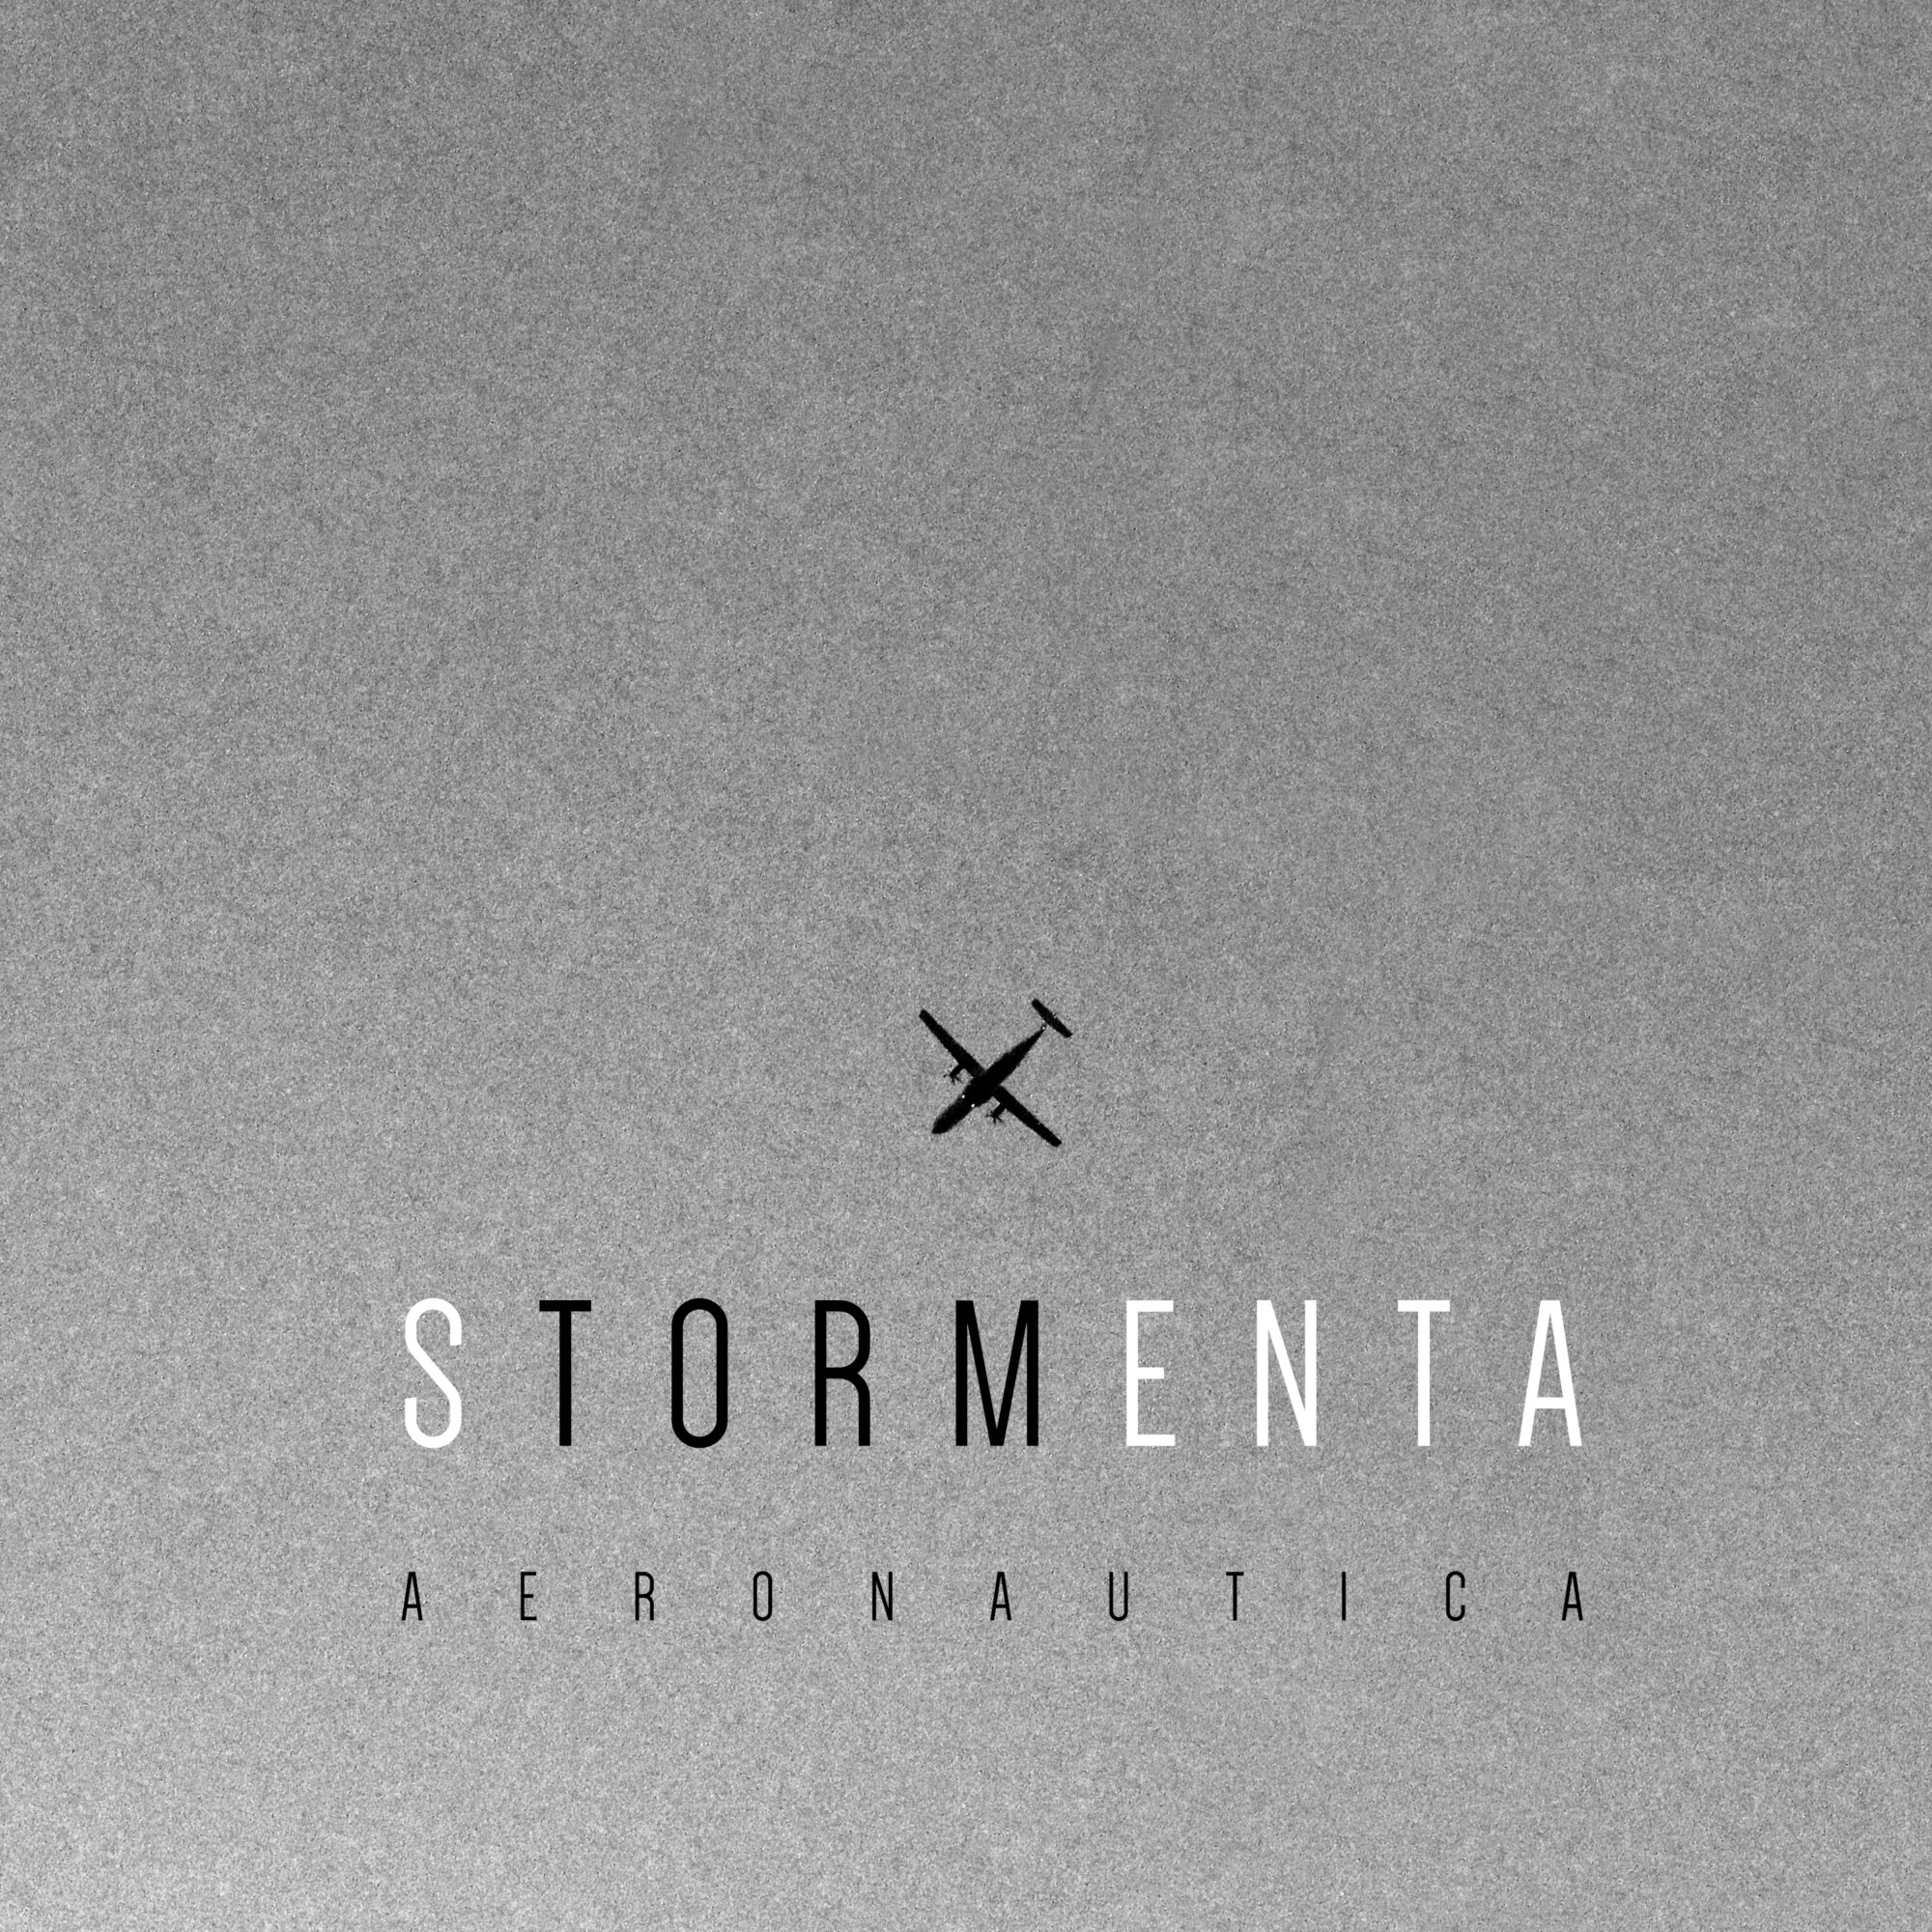 Stormenta - Aeronautica